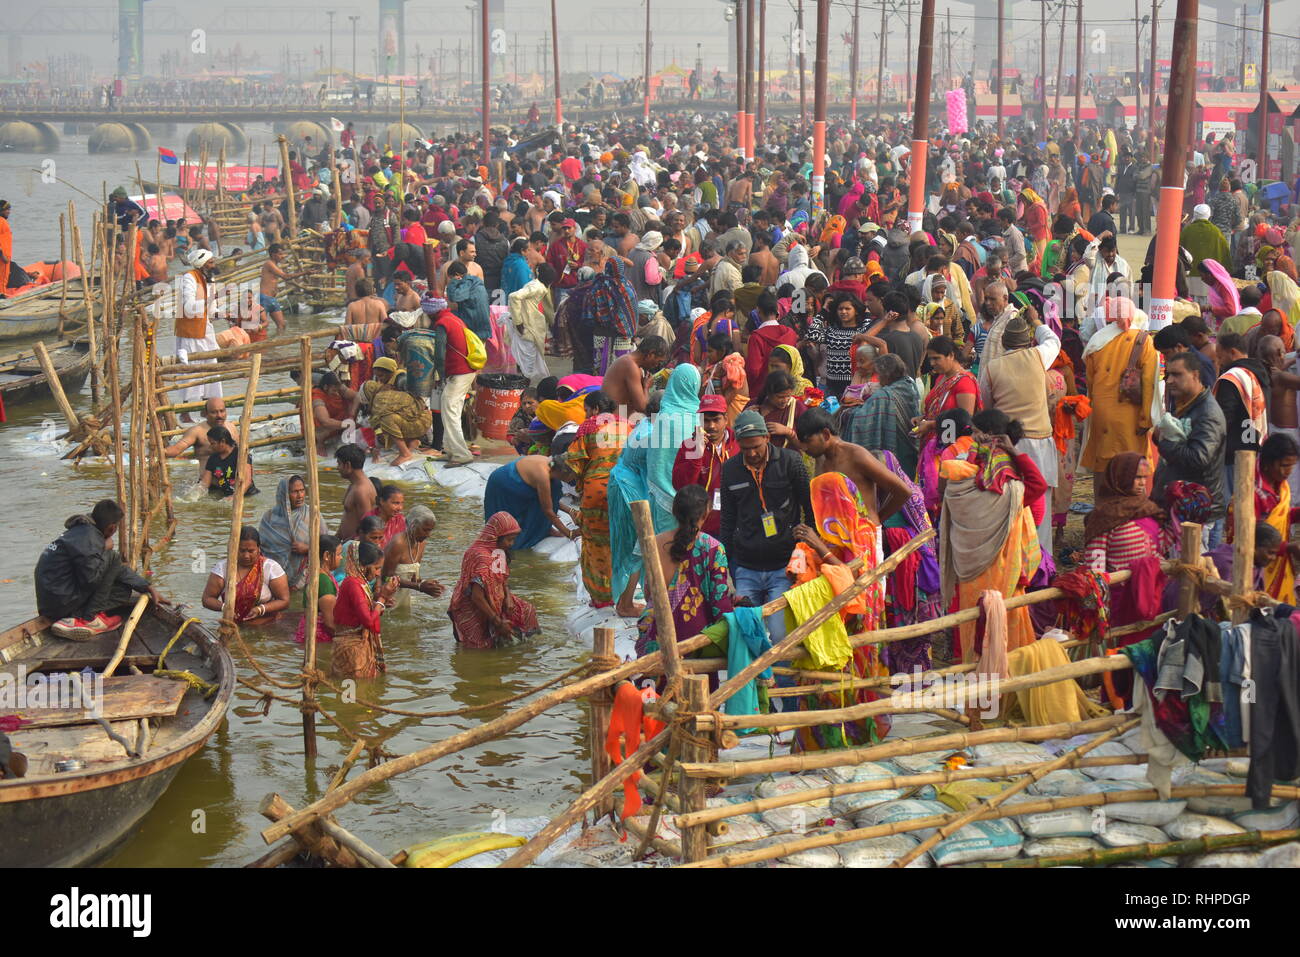 Pilger gesehen ein heiliges Bad während der Wallfahrt. Kumbh Mela, einer der größten Gemeinde des Menschen auf der Erde. 3 crore Leute werden erwartet am Tag der zweiten Shahi Snan am 4. Februar und Arrangements sind entsprechend in Prayagraj gemacht. Stockfoto